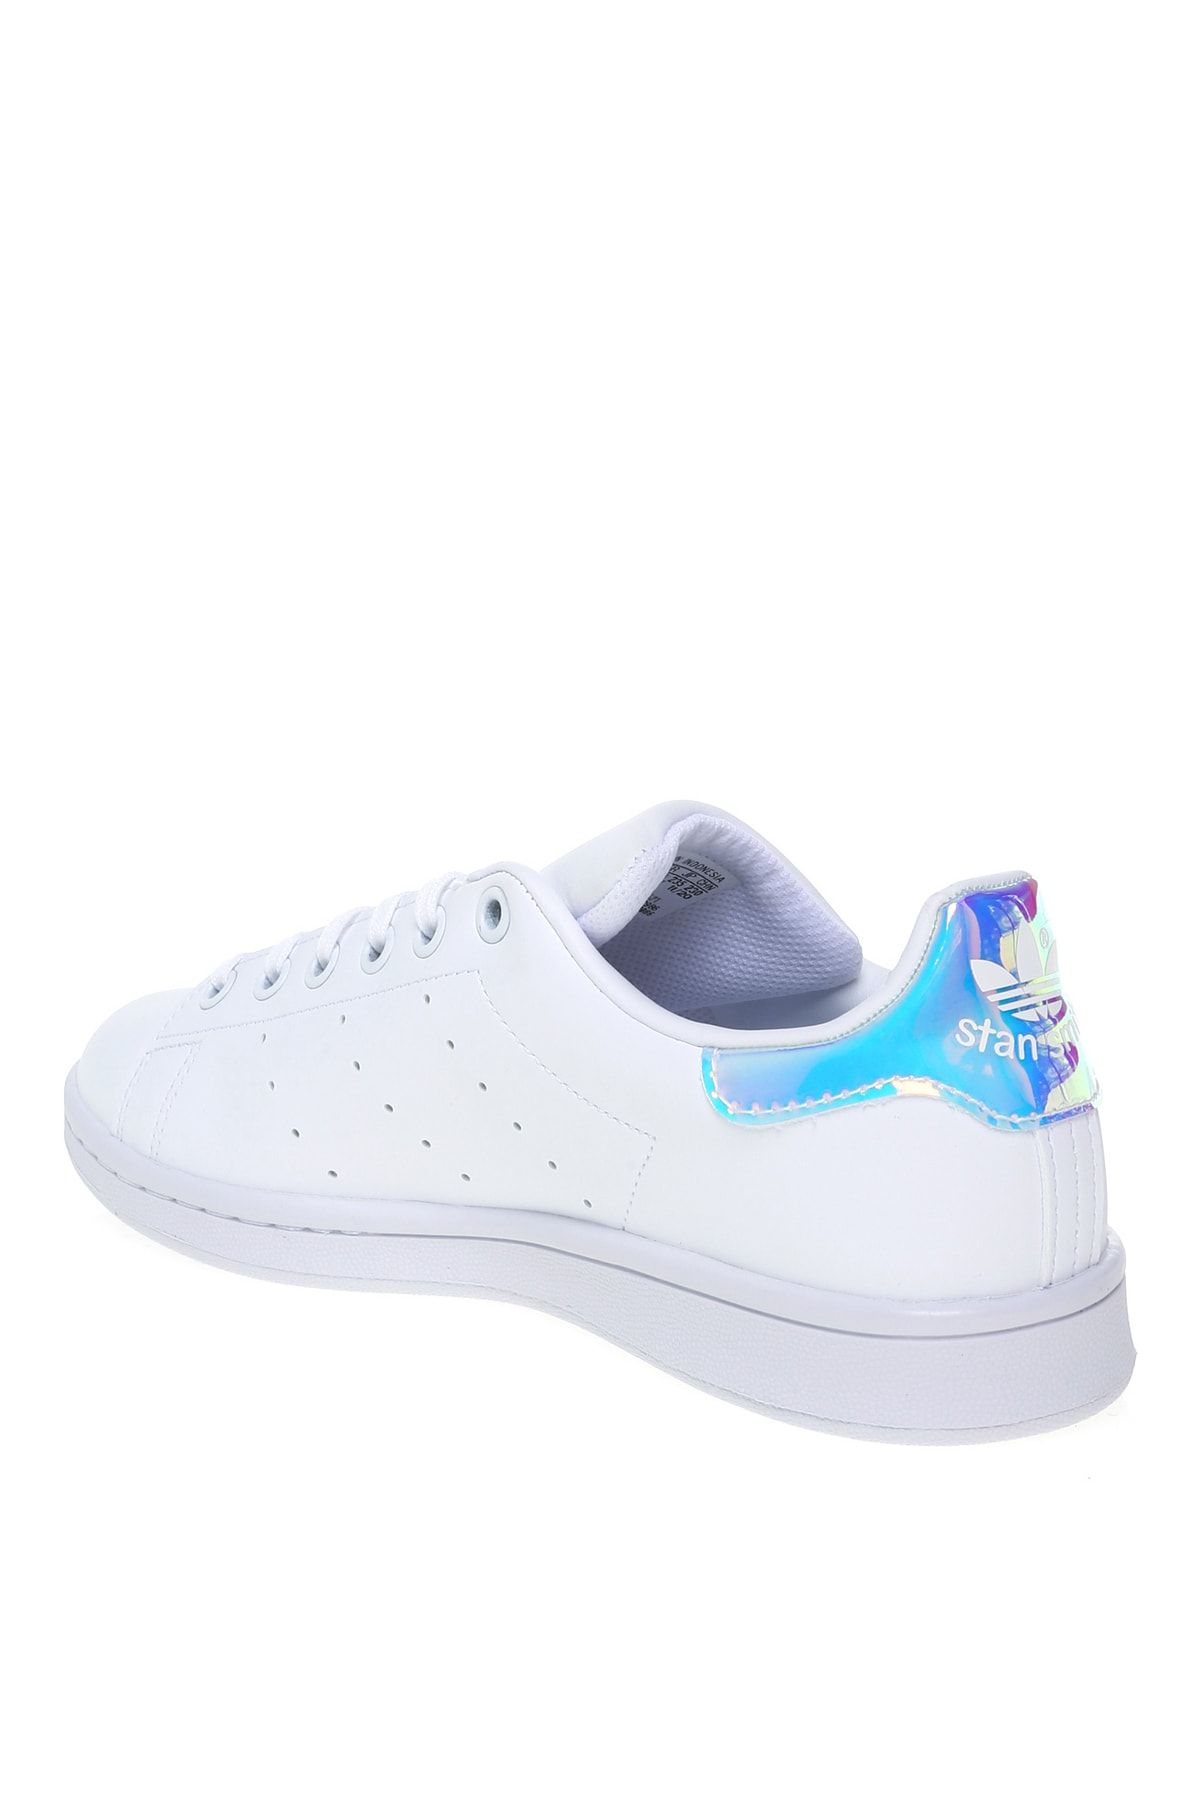 adidas Fx7521 Stan Smıth J Beyaz - Gümüş Kız Çocuk Yürüyüş Ayakkabısı